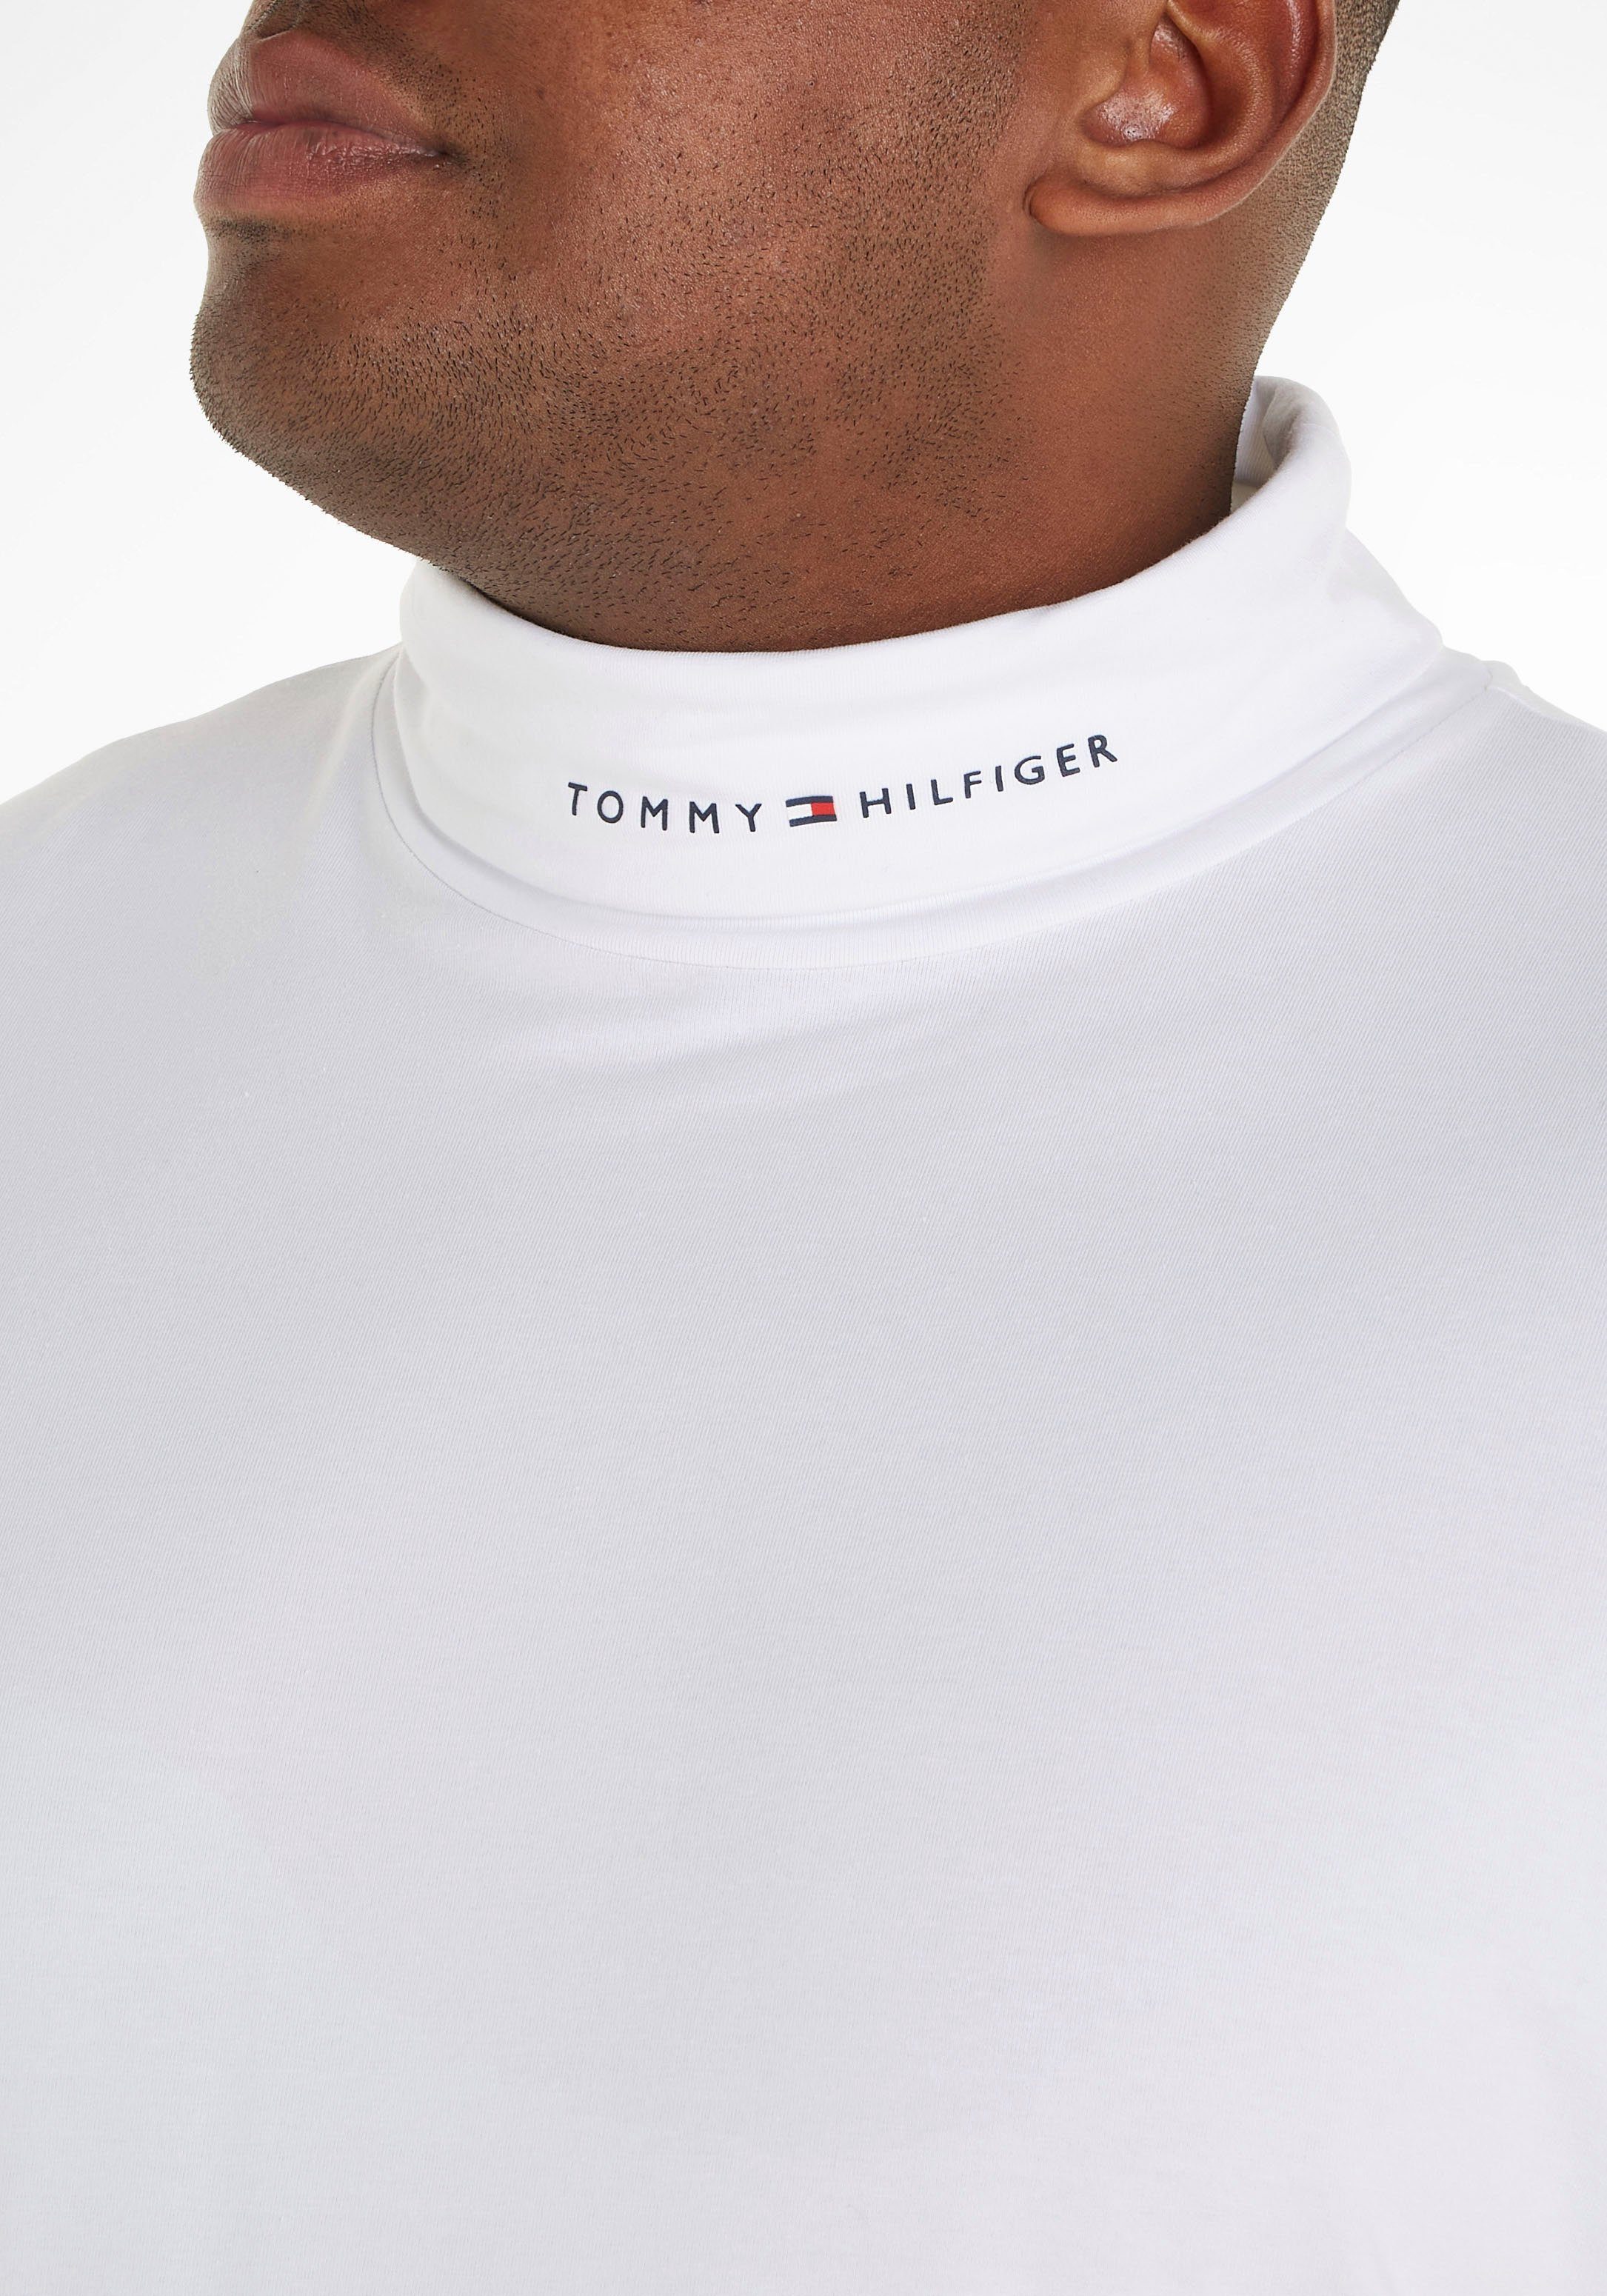 Big Rollkragenshirt weiß Logoschriftzug dezentem Kragen mit Tall Tommy am Hilfiger &